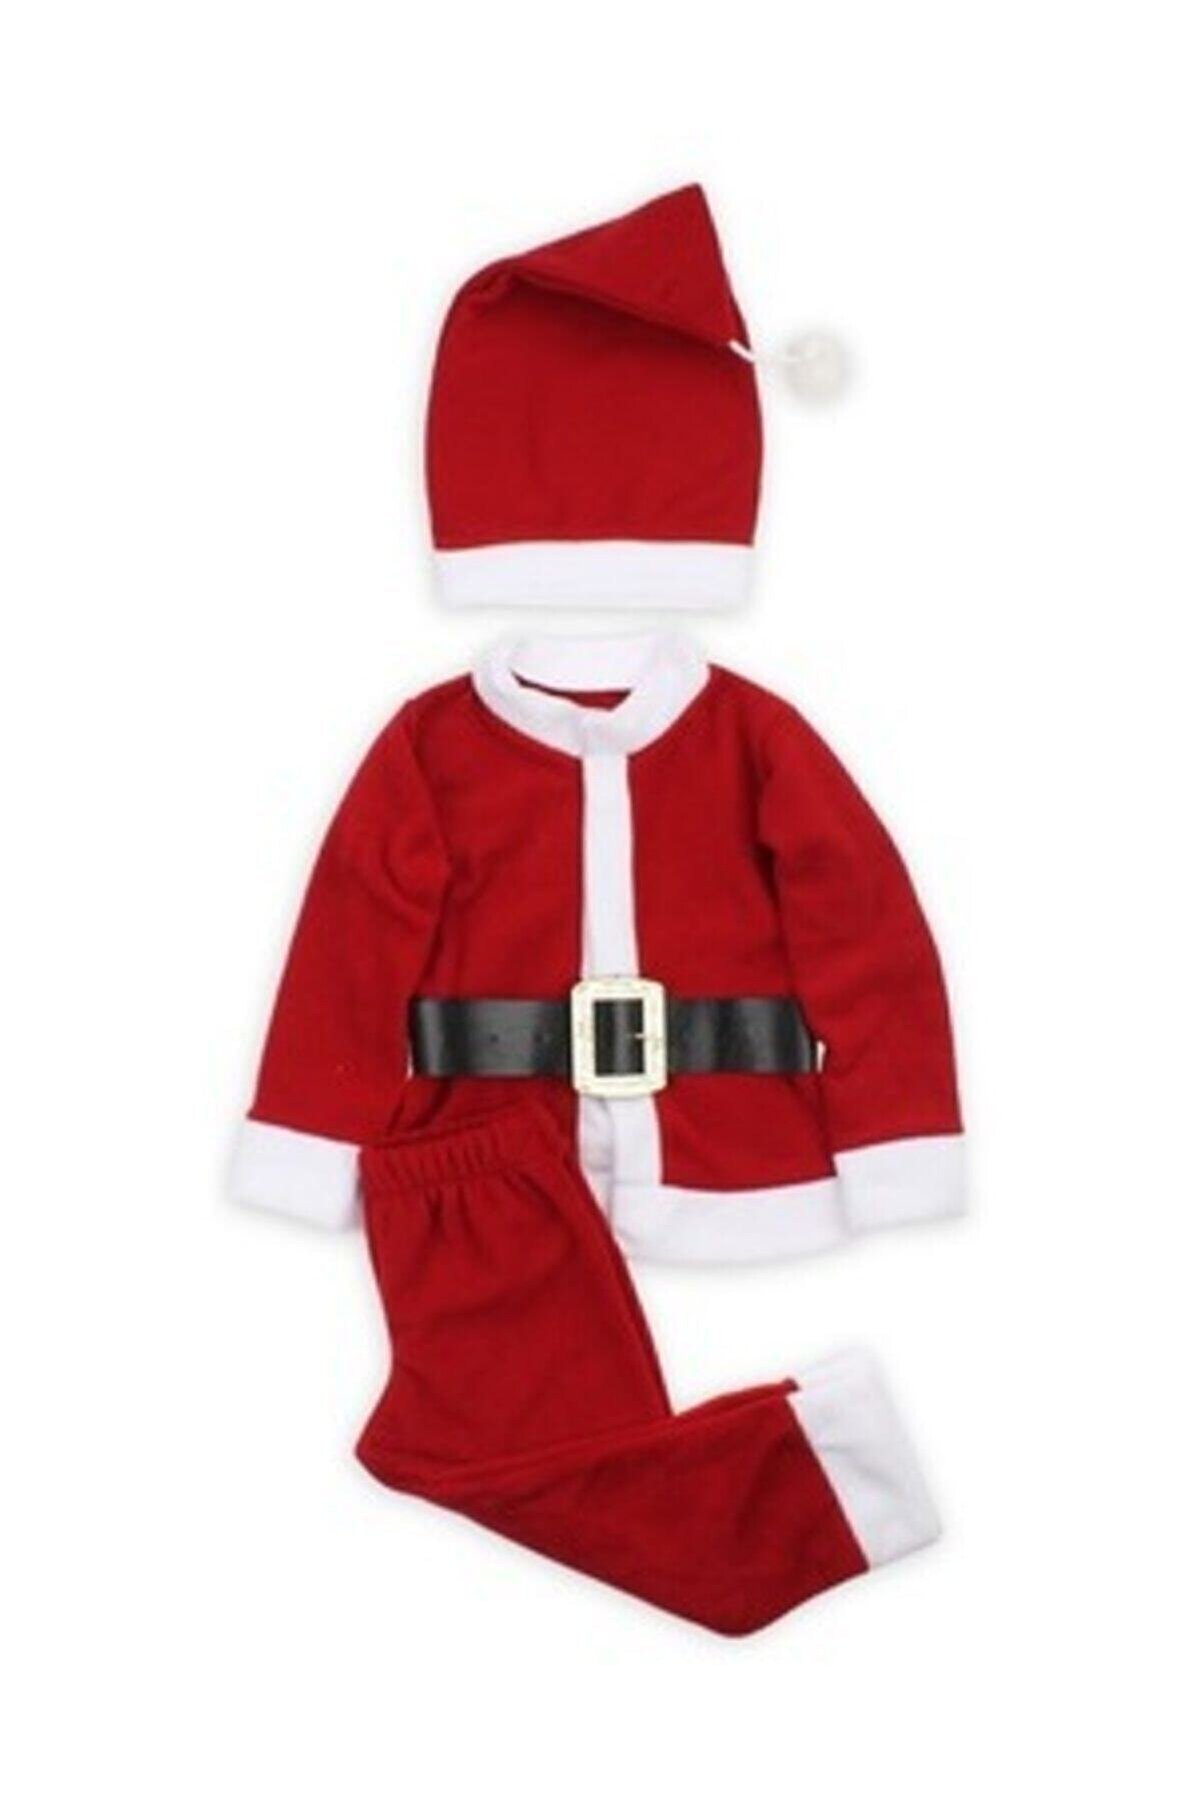 salarticaret Erkek Çocuk Bebek Noel Yılbaşı Kostümü Kıyafeti 18-24 Ay